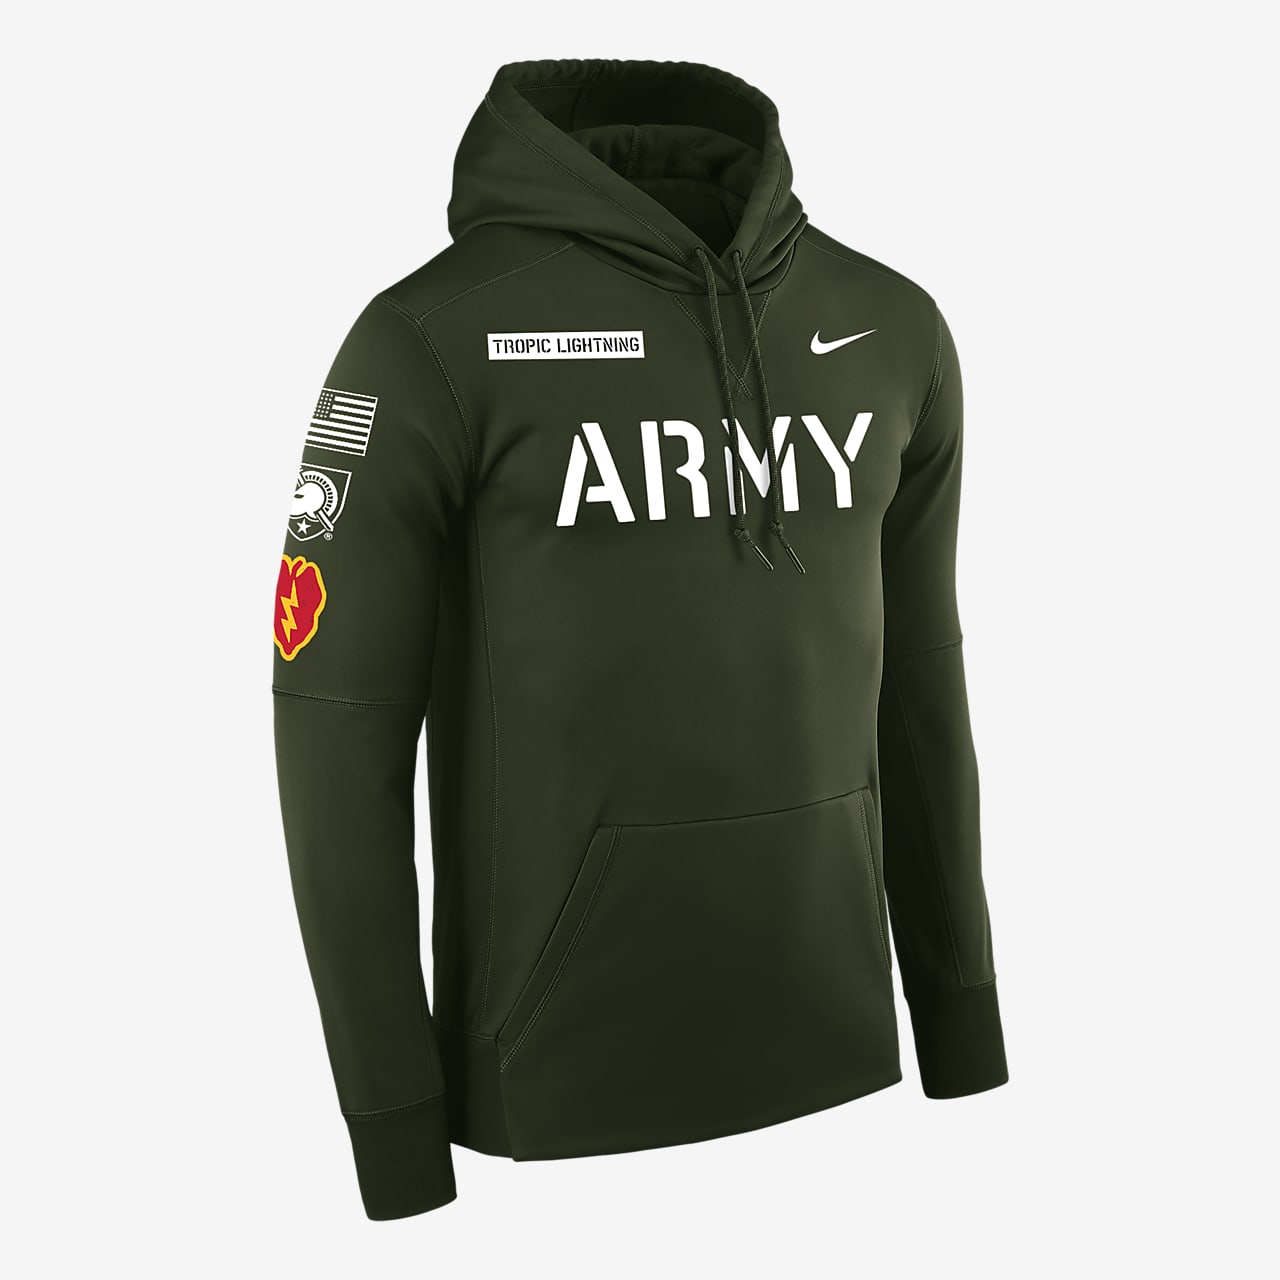 Sway nike army hoodie 